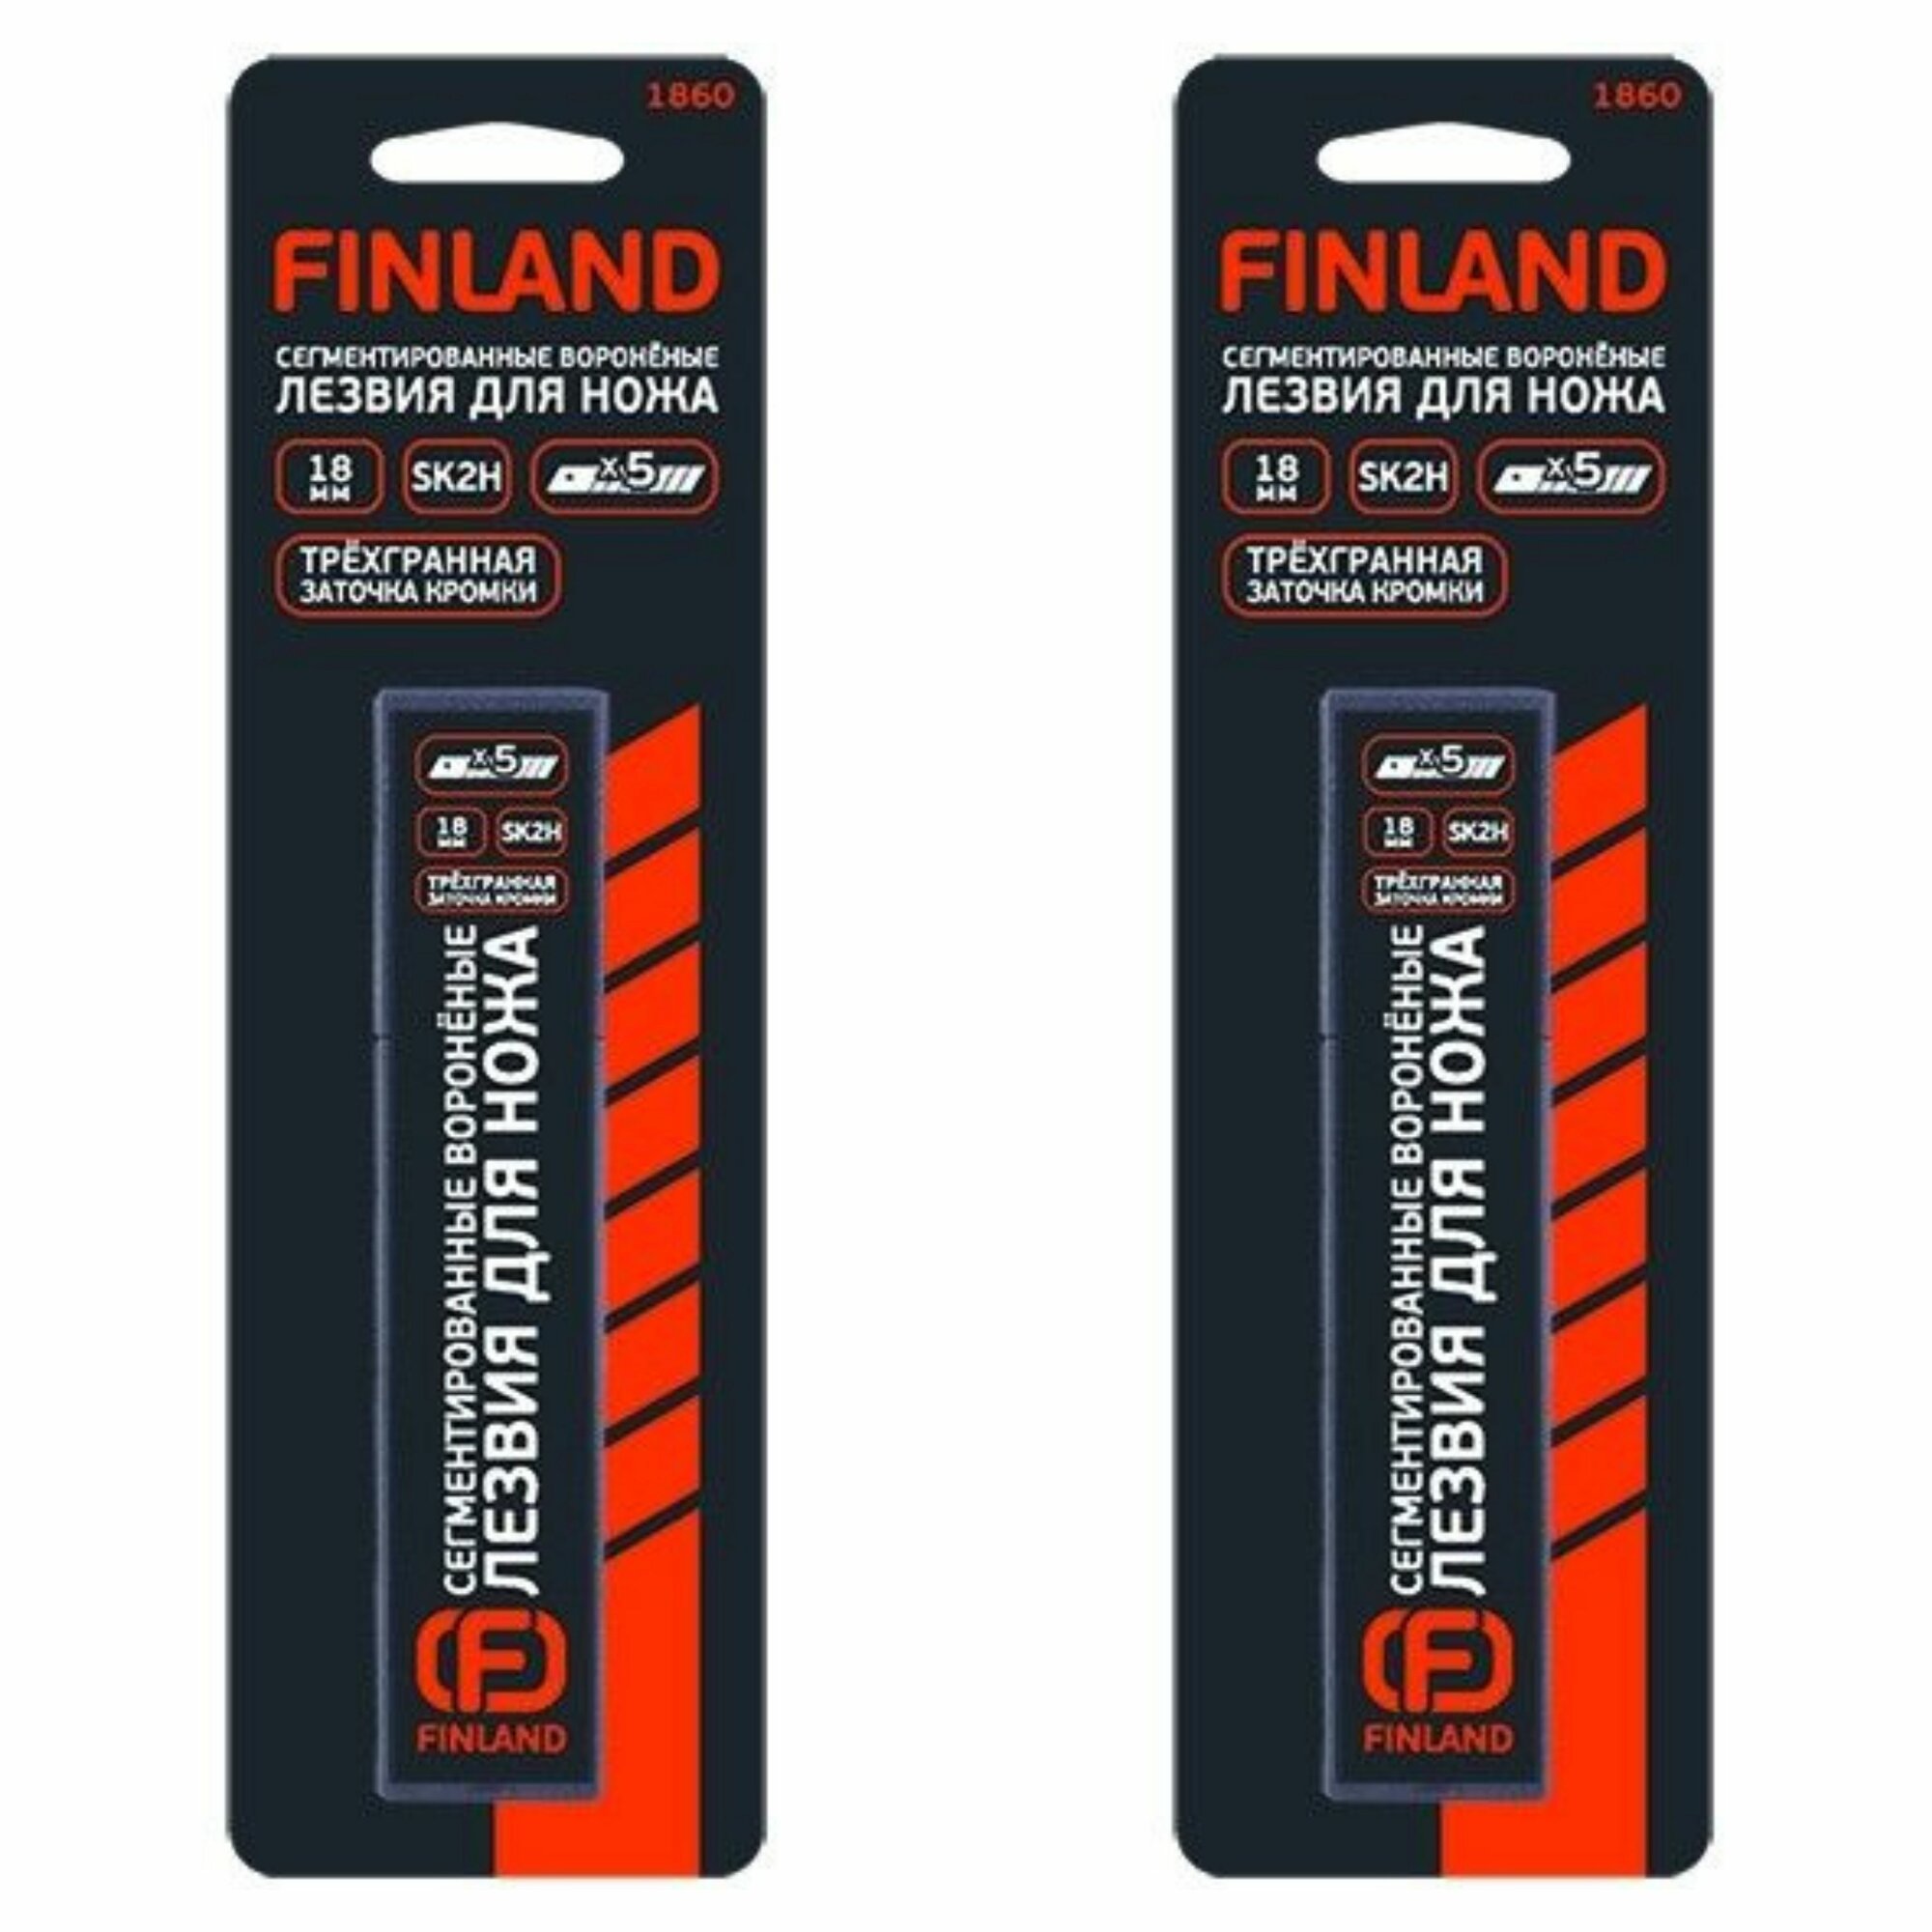 Сменные сегментированные воронёные лезвия 18 мм Finland 10 штук